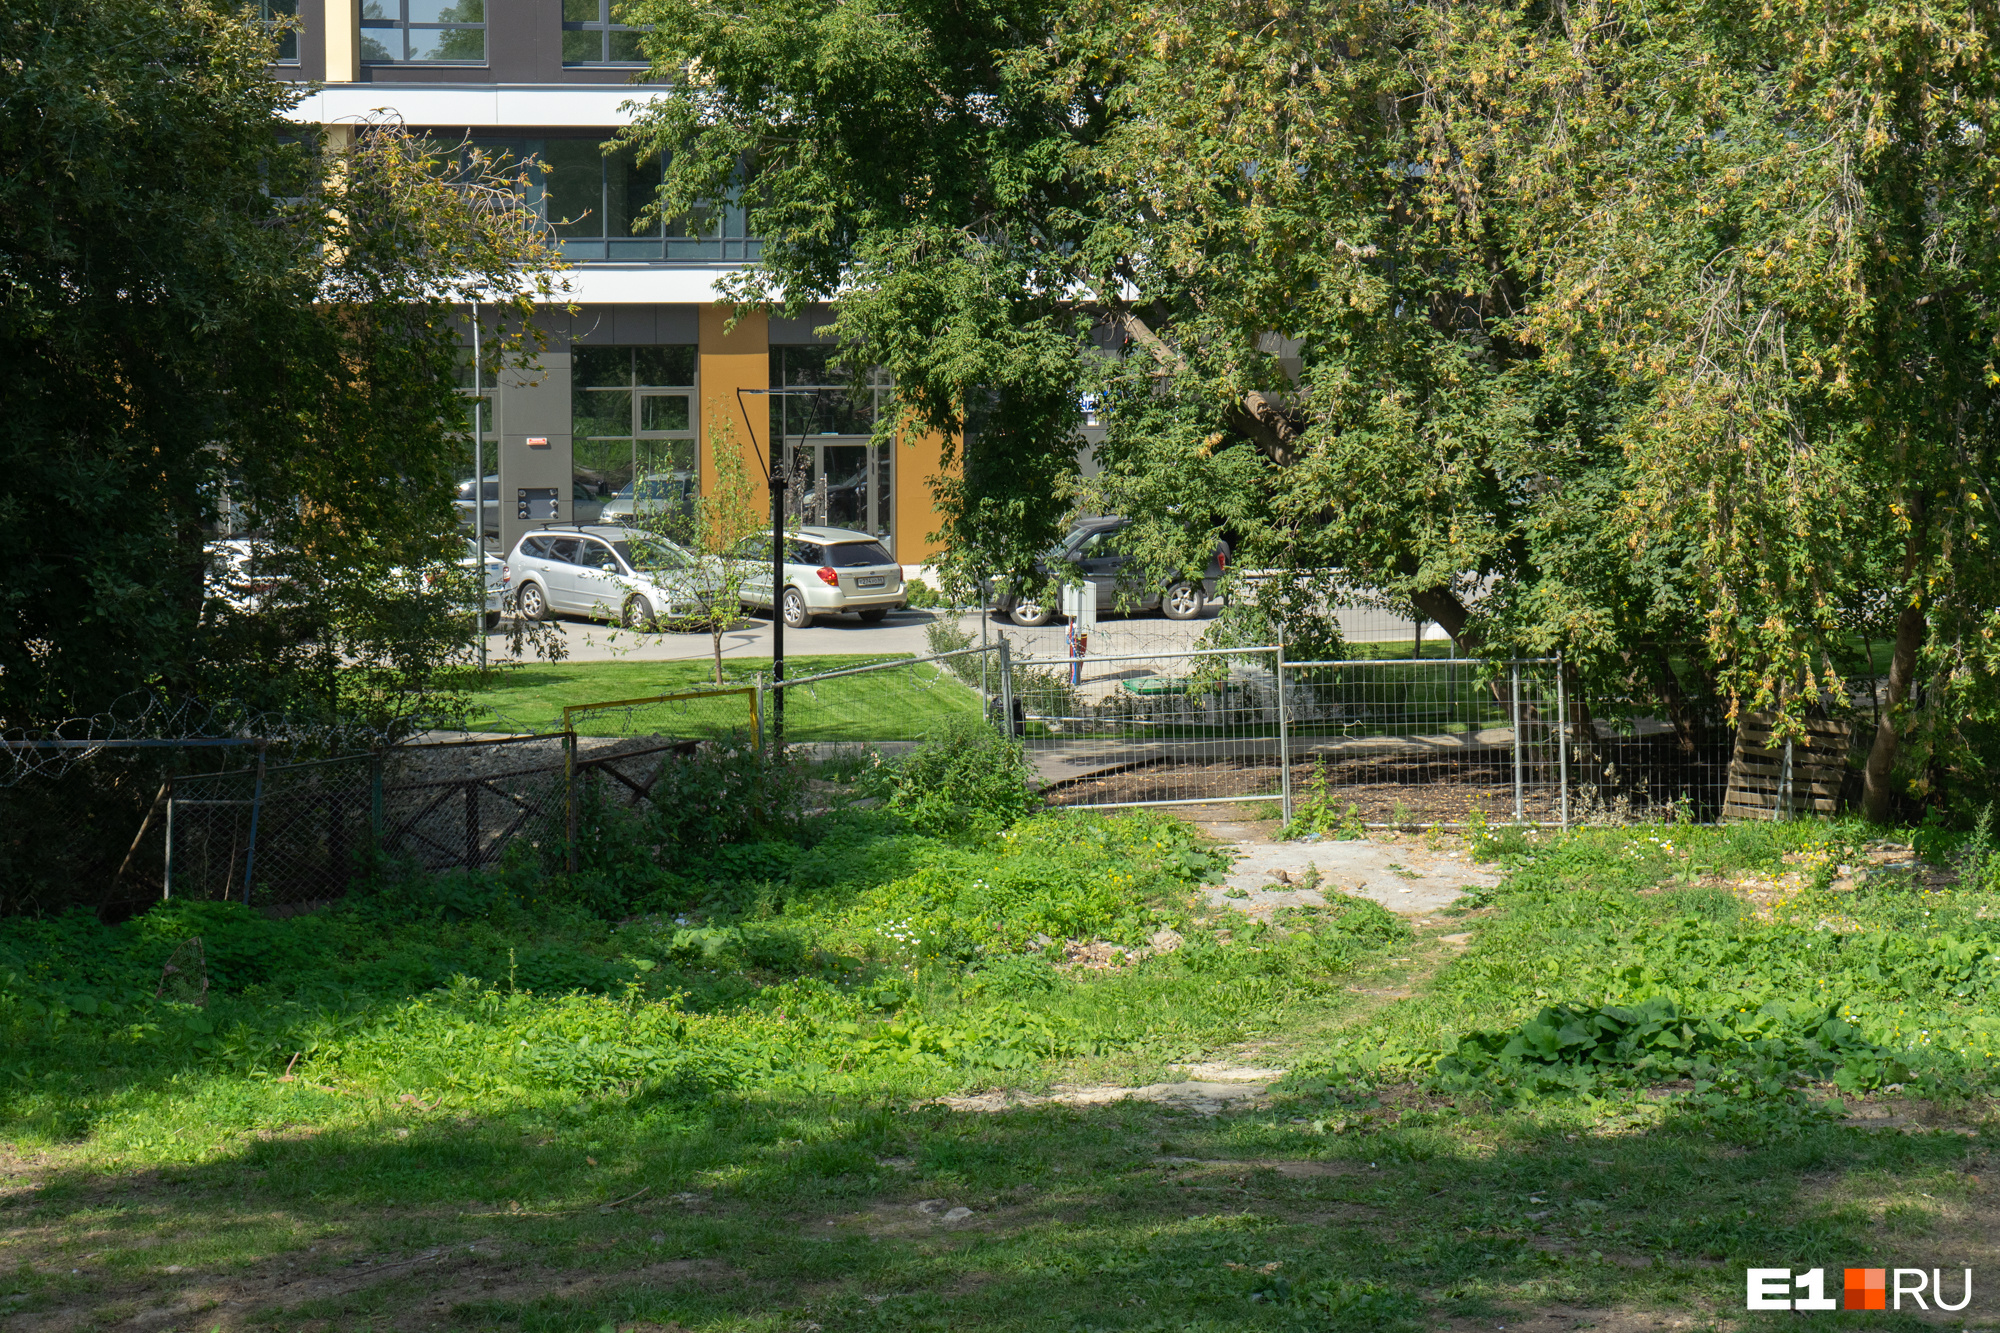 Дорожка выводит ко входу со стороны Clever Park и участку, который используется парком как хозяйственный двор